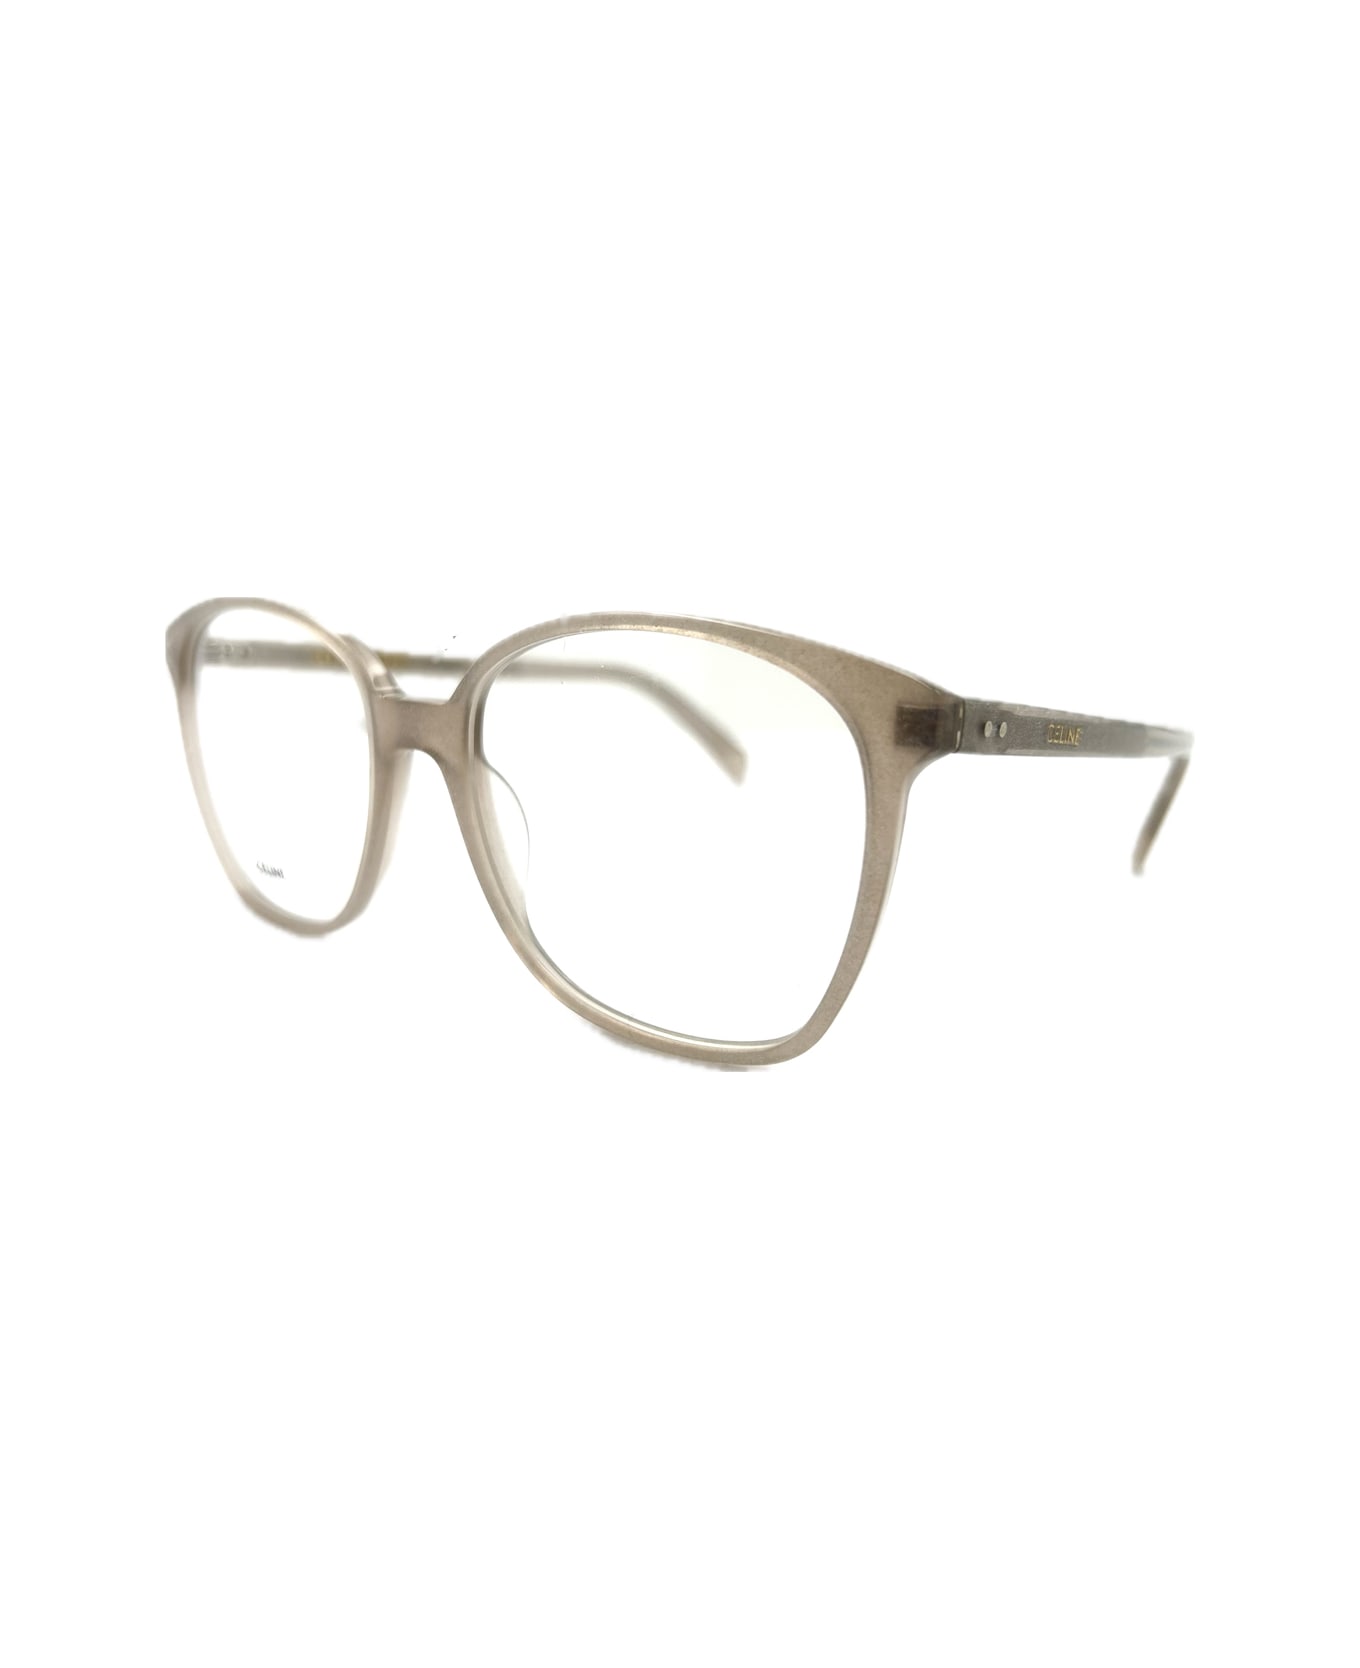 Celine Cl50115i 020 Glasses - Beige